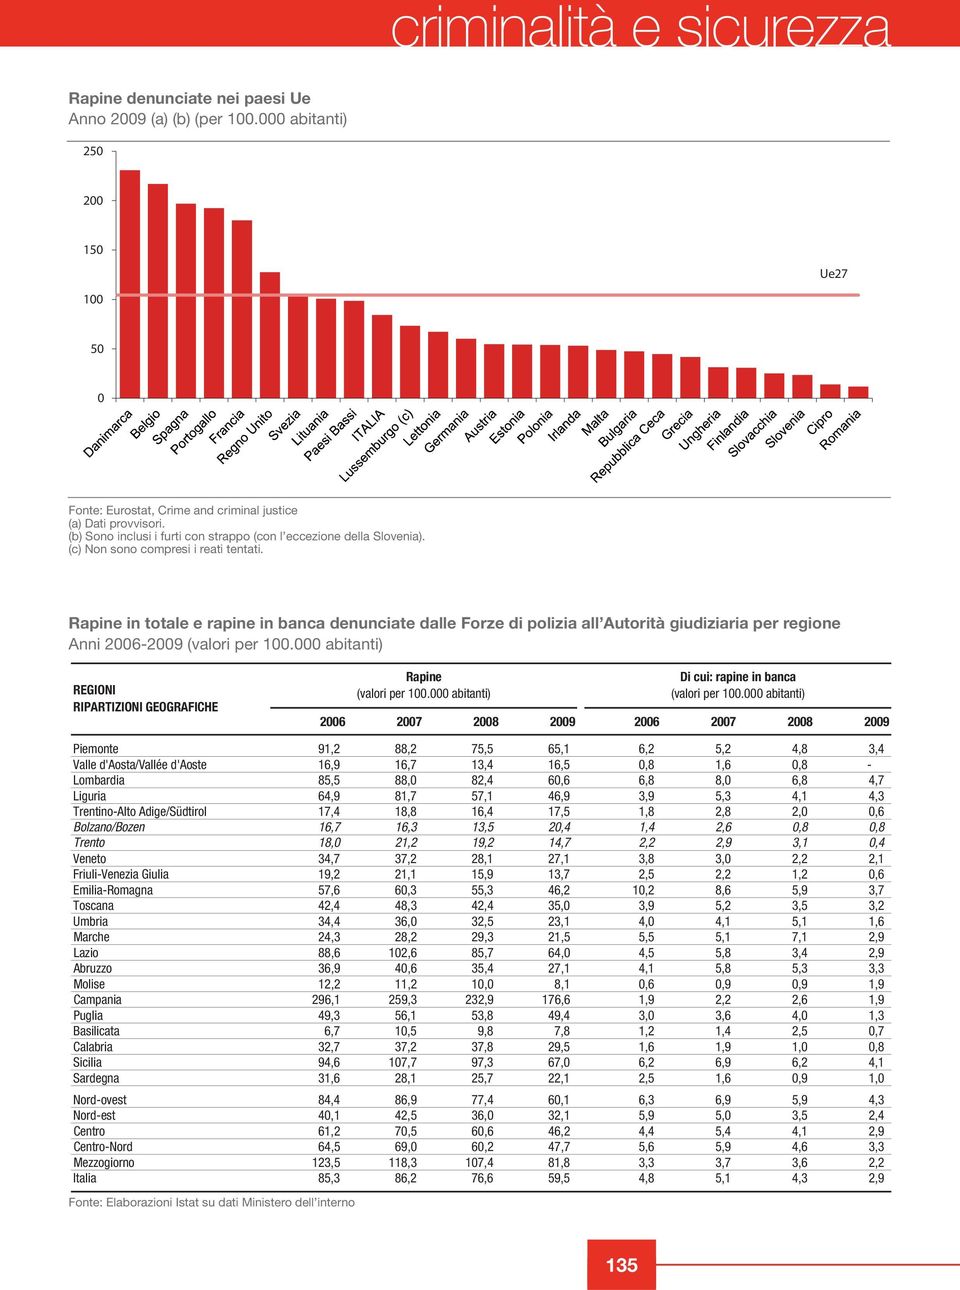 Rapine in totale e rapine in banca denunciate dalle Forze di polizia all Autorità giudiziaria per regione Anni 2006-2009 (valori per 100.